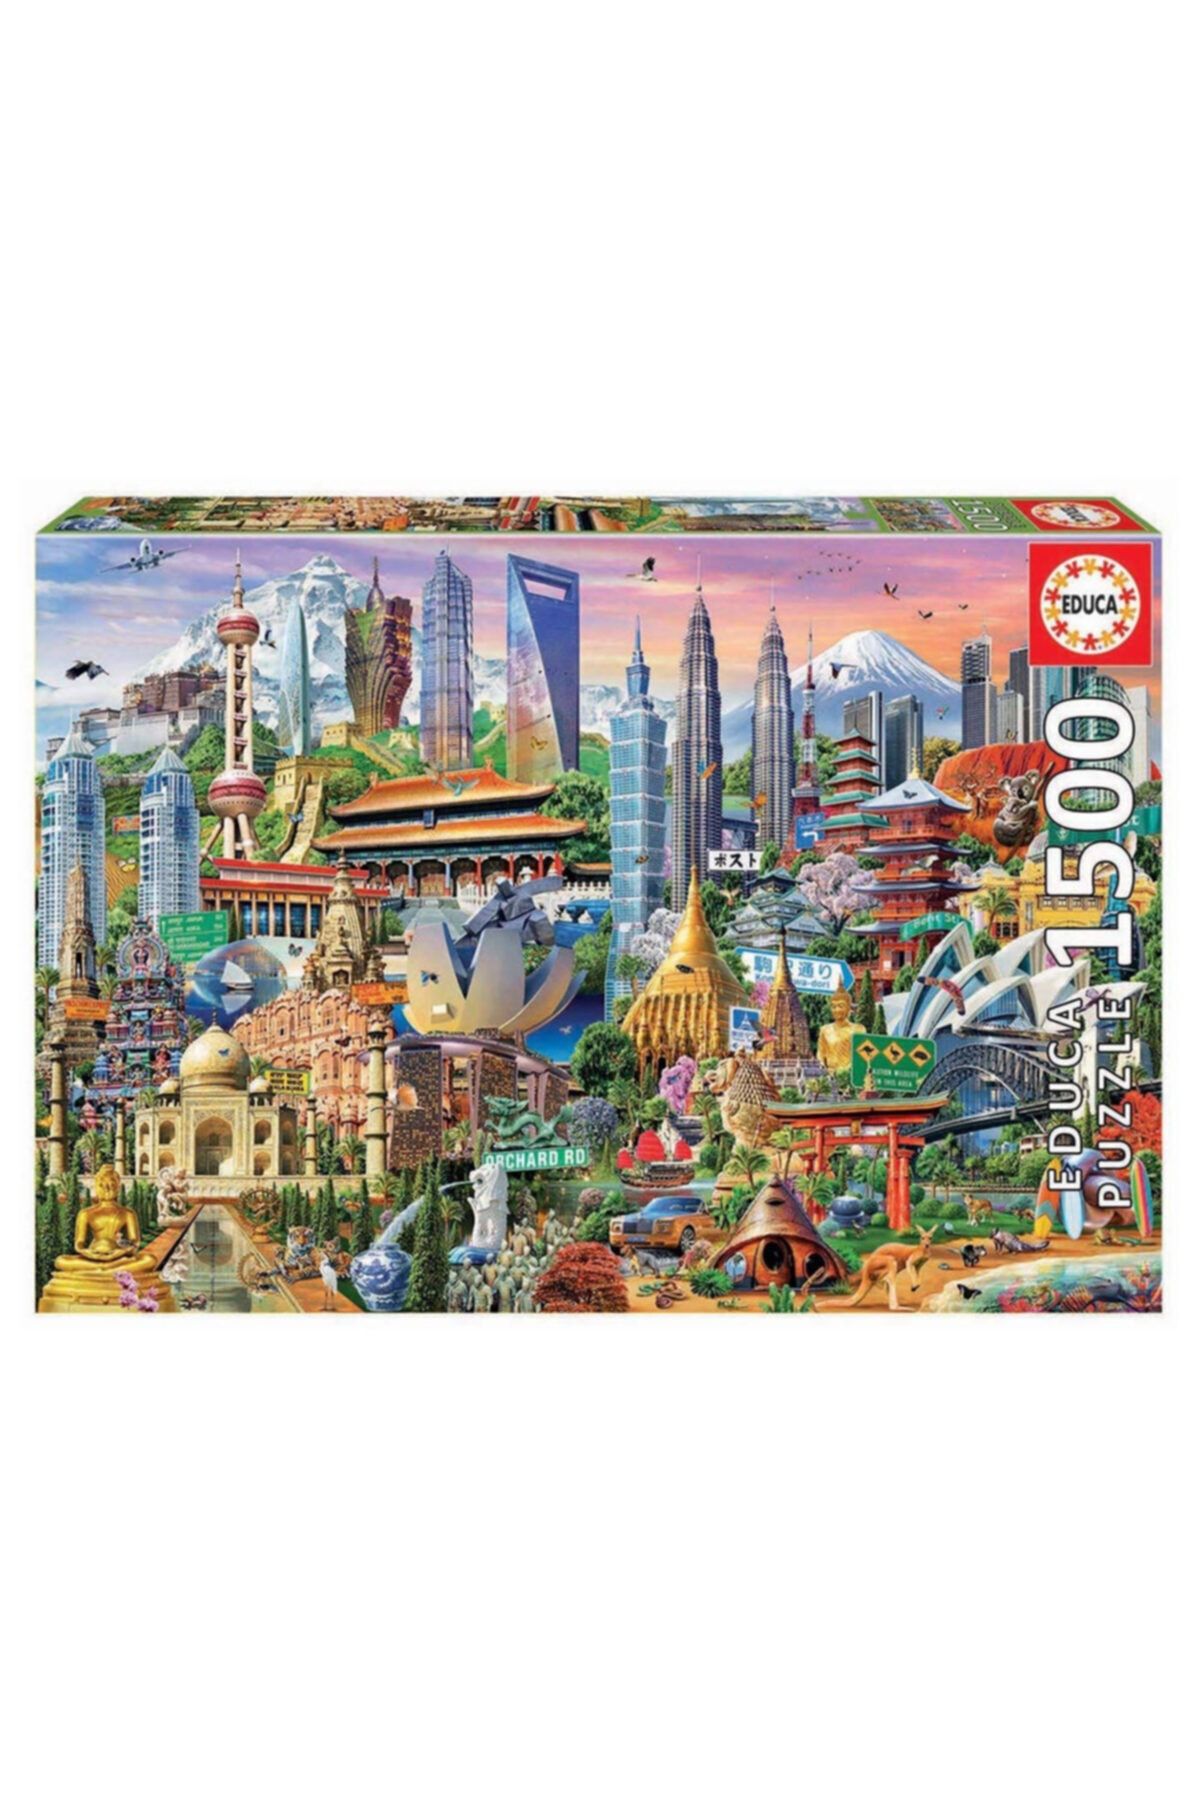 EDUCA Puzzle 1500 Parça Asya Da Tarihi Anıtlar 17979